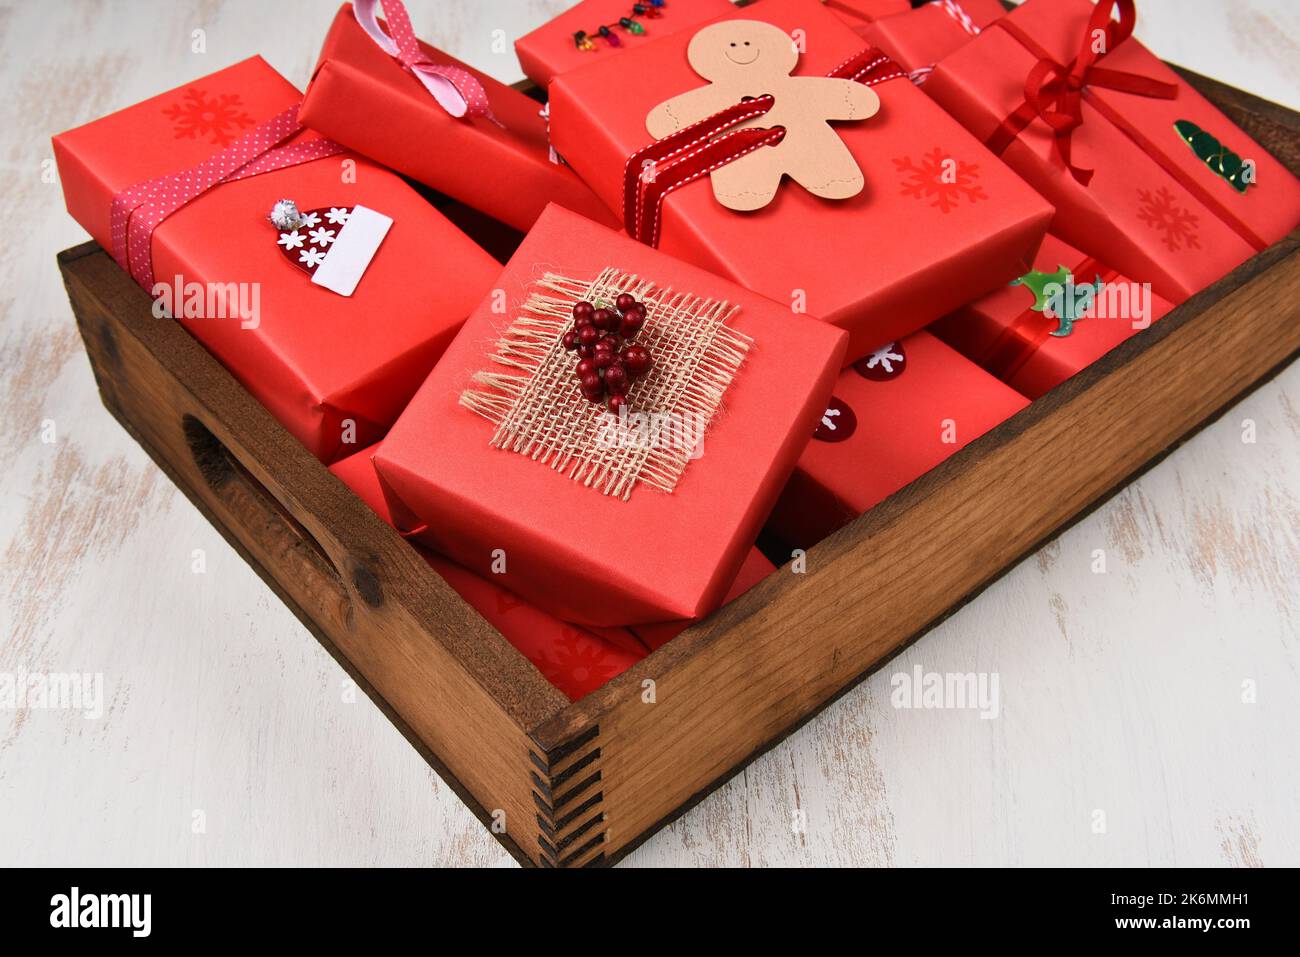 Regali di Natale. Primo piano di regali avvolti e decorati in carta rossa in una scatola di legno scuro. Foto Stock